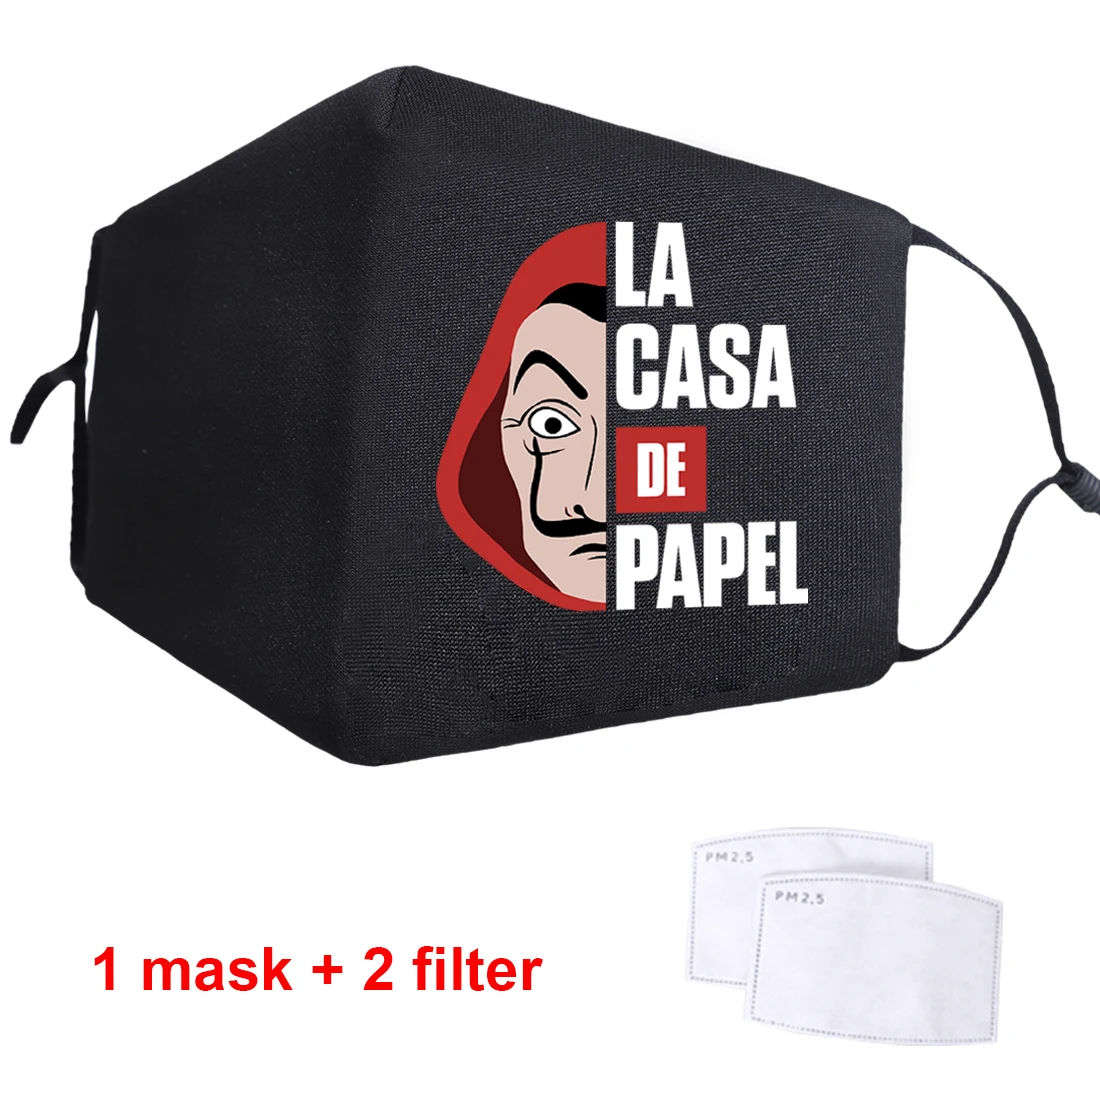 

La casa de papel Face Masks Dustproof Washable Mens/Woman PM2.5 Activated Carbon Filter Paper Breathable Anti Haze Masks 2020